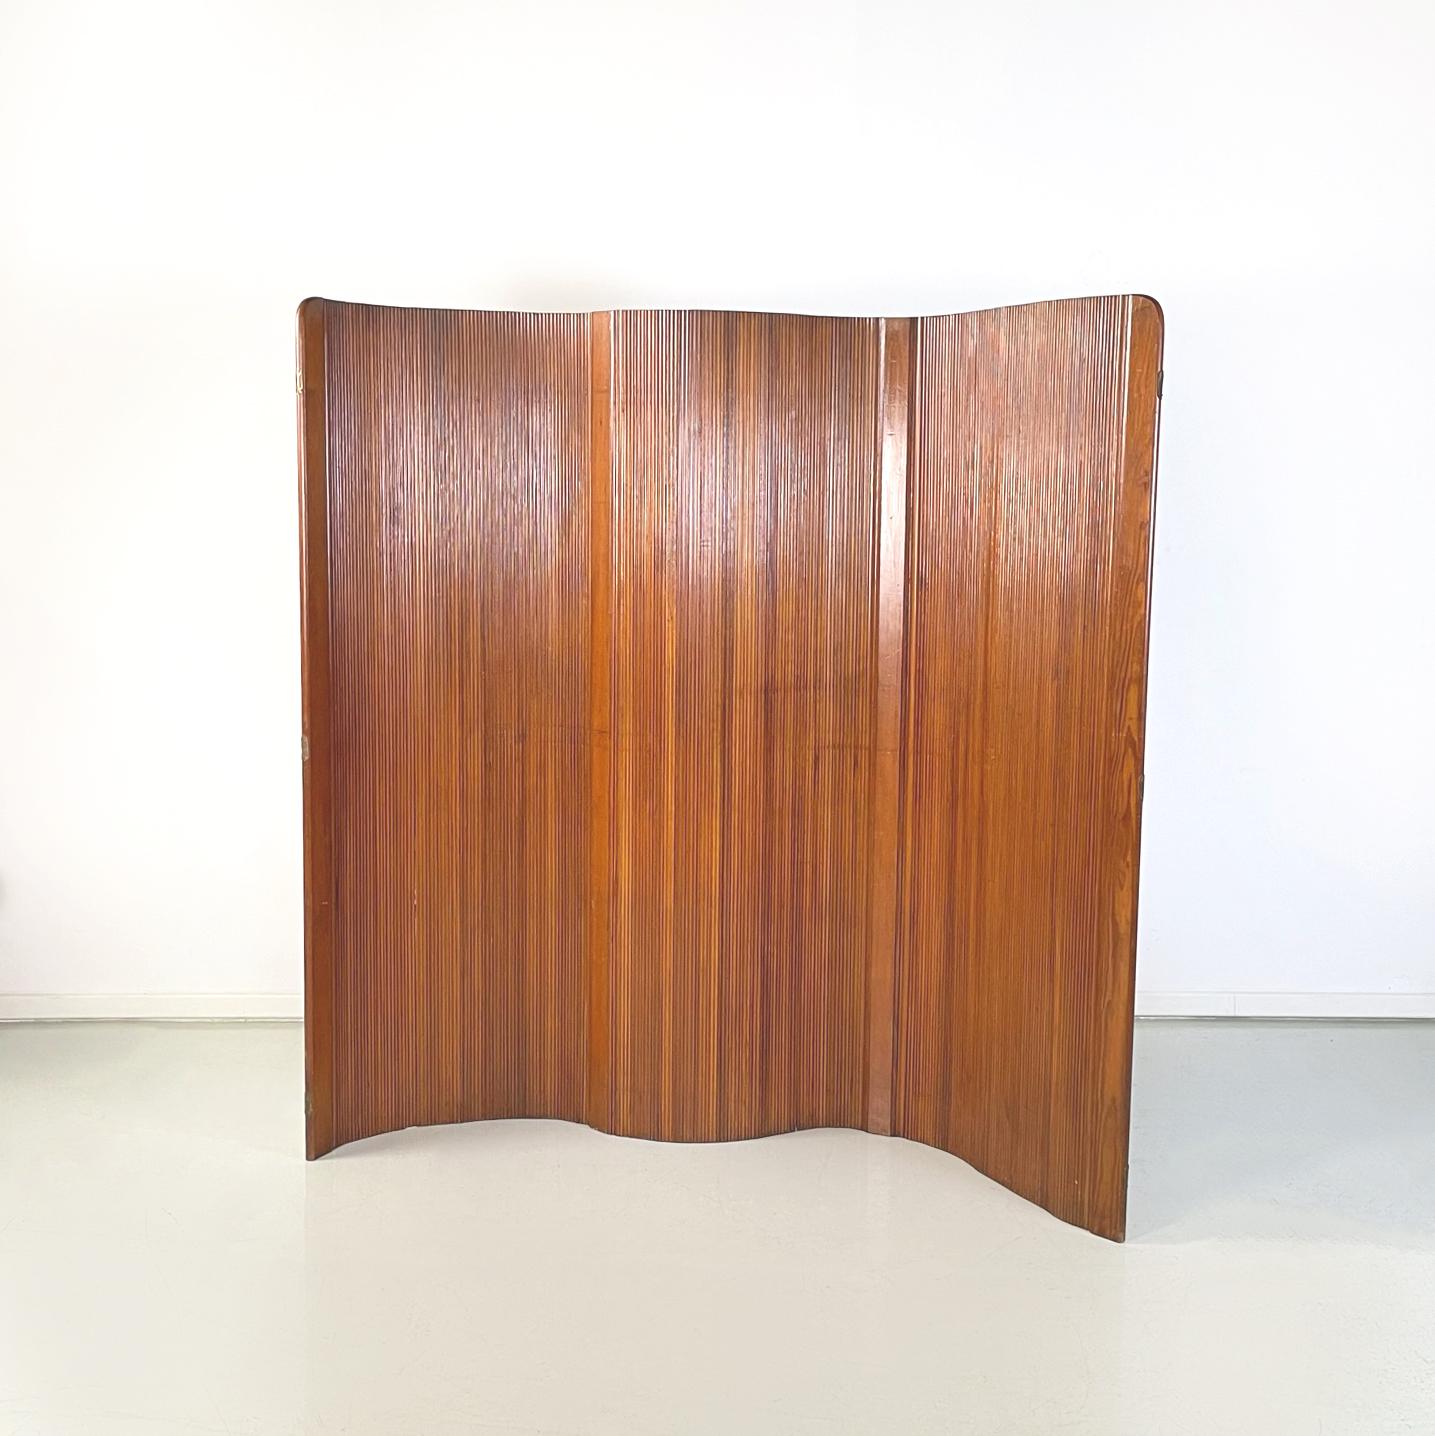 Französischer Art-déco-Selbsttragender Holzschirm von Baumann, 1950er Jahre
Selbsttragender Paravent, der aus vertikalen Holzleisten in verschiedenen Farbtönen besteht. Diese Struktur ermöglicht es, dass der Bildschirm vollständig beweglich ist und